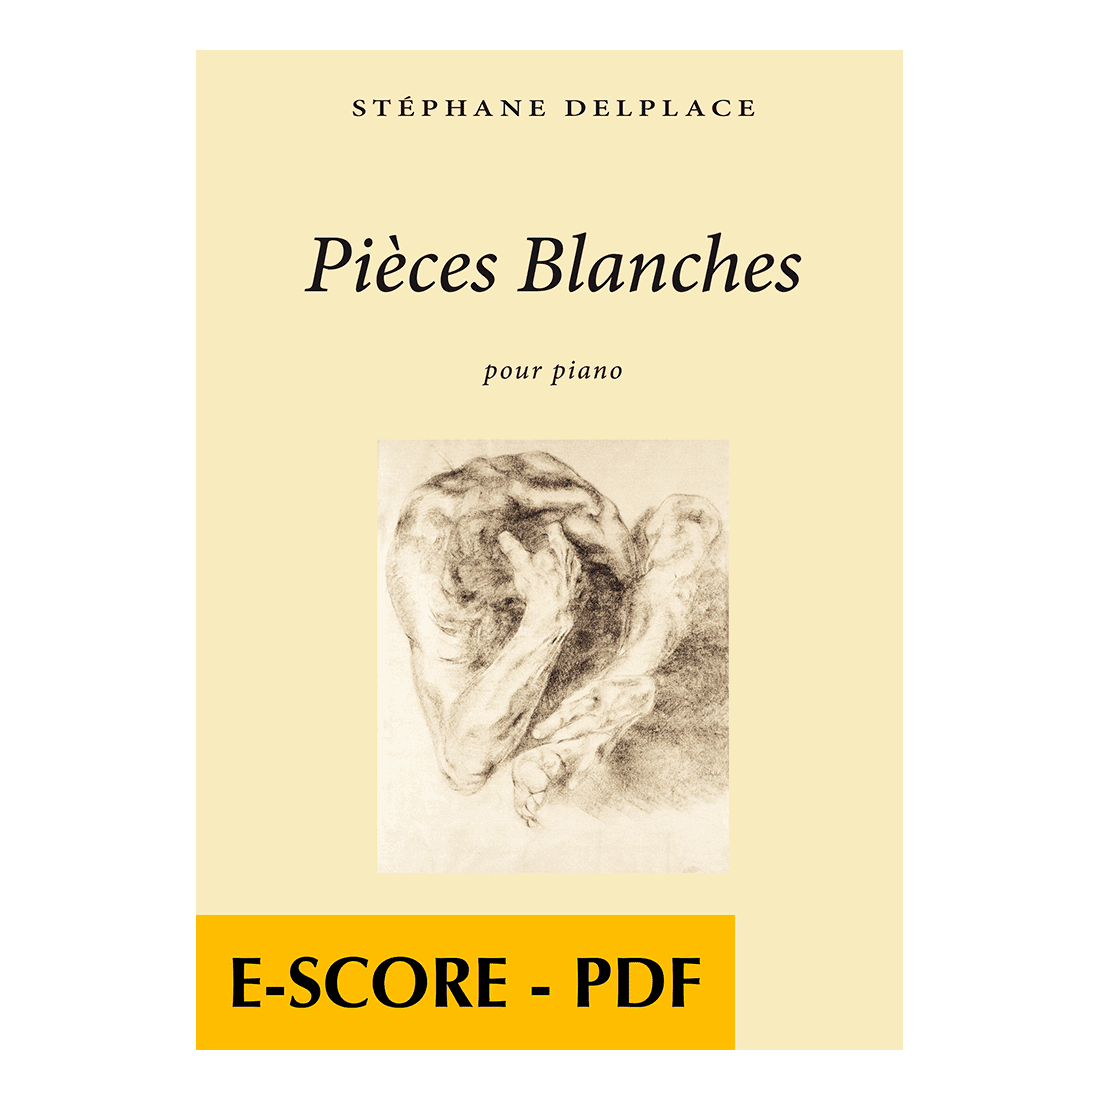 Pièces blanches pour piano -E-score PDF